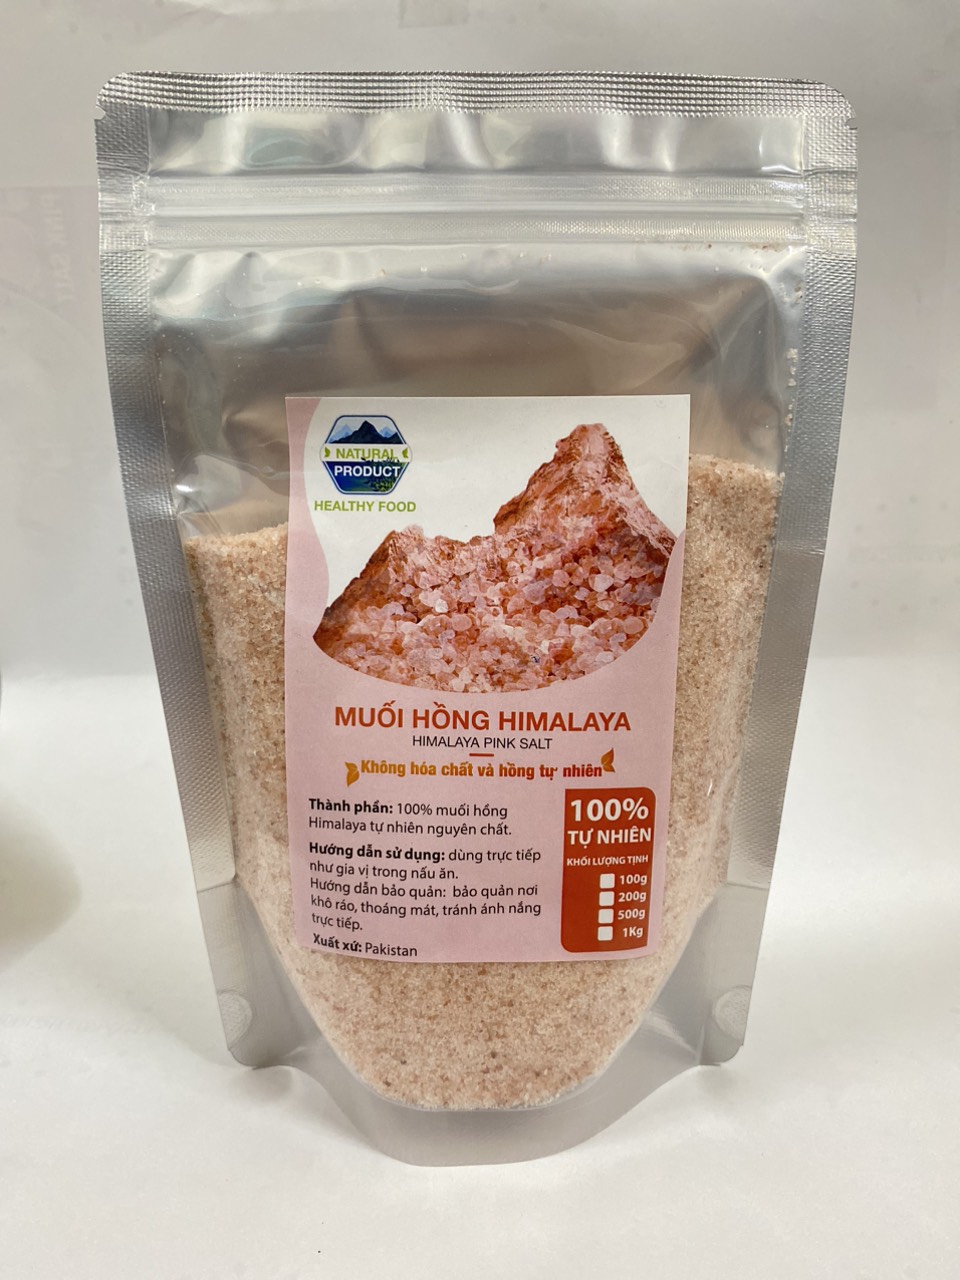 Muối Hồng Himalaya Organic Dạng Mịn và Hạt  Muối Hồng Pink Salt  Himalaya Nấu Ăn Ngâm Chân Điều Được 500GR-1KG